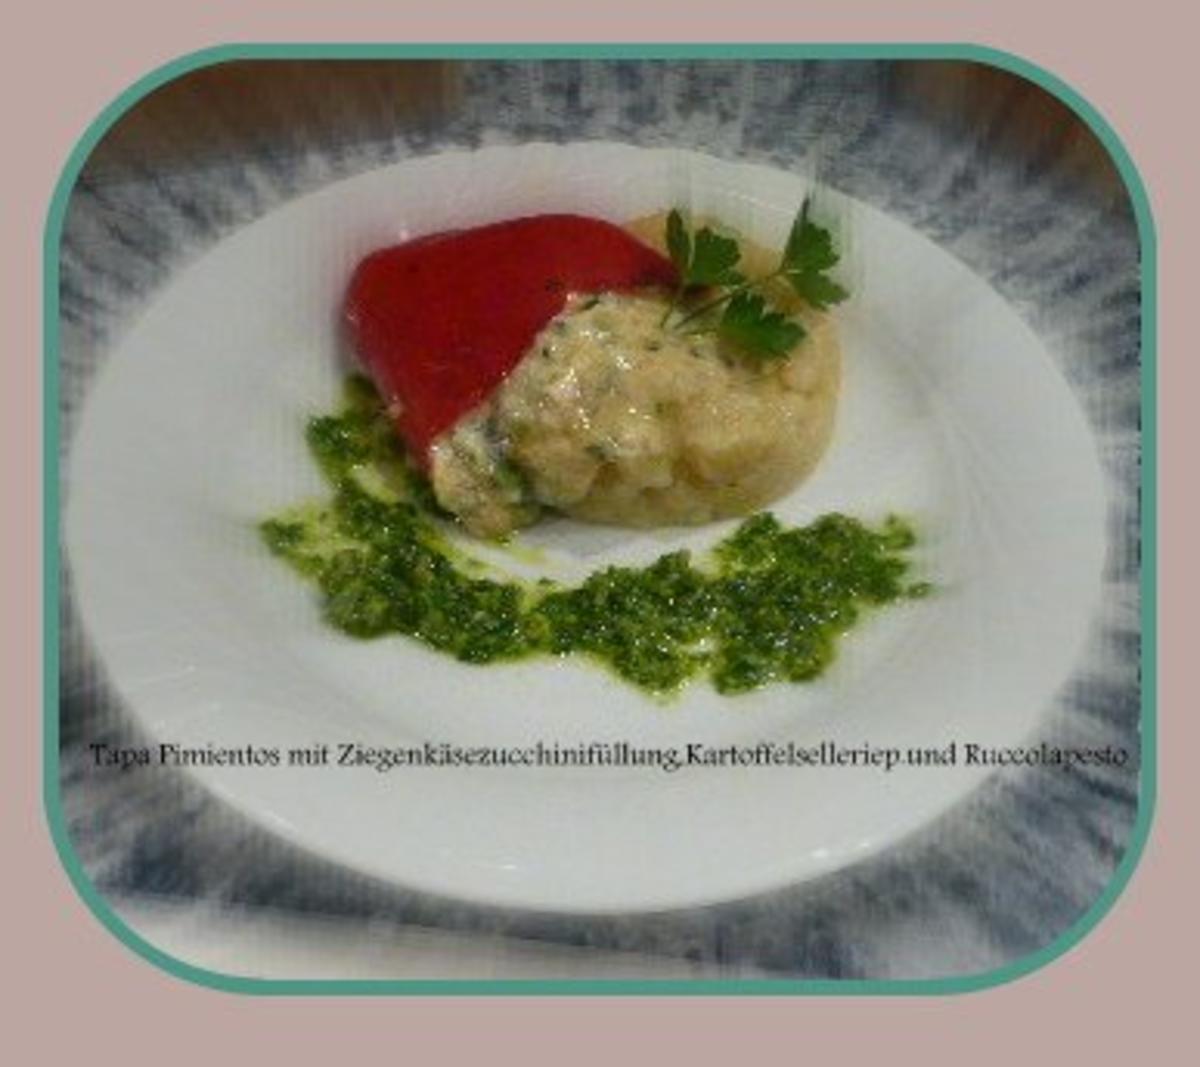 Bilder für Tapa Pimientos mit Ziegenkäse-Zucchinifüllung,Kartoffelselleriepüree und Rucolapesto - Rezept